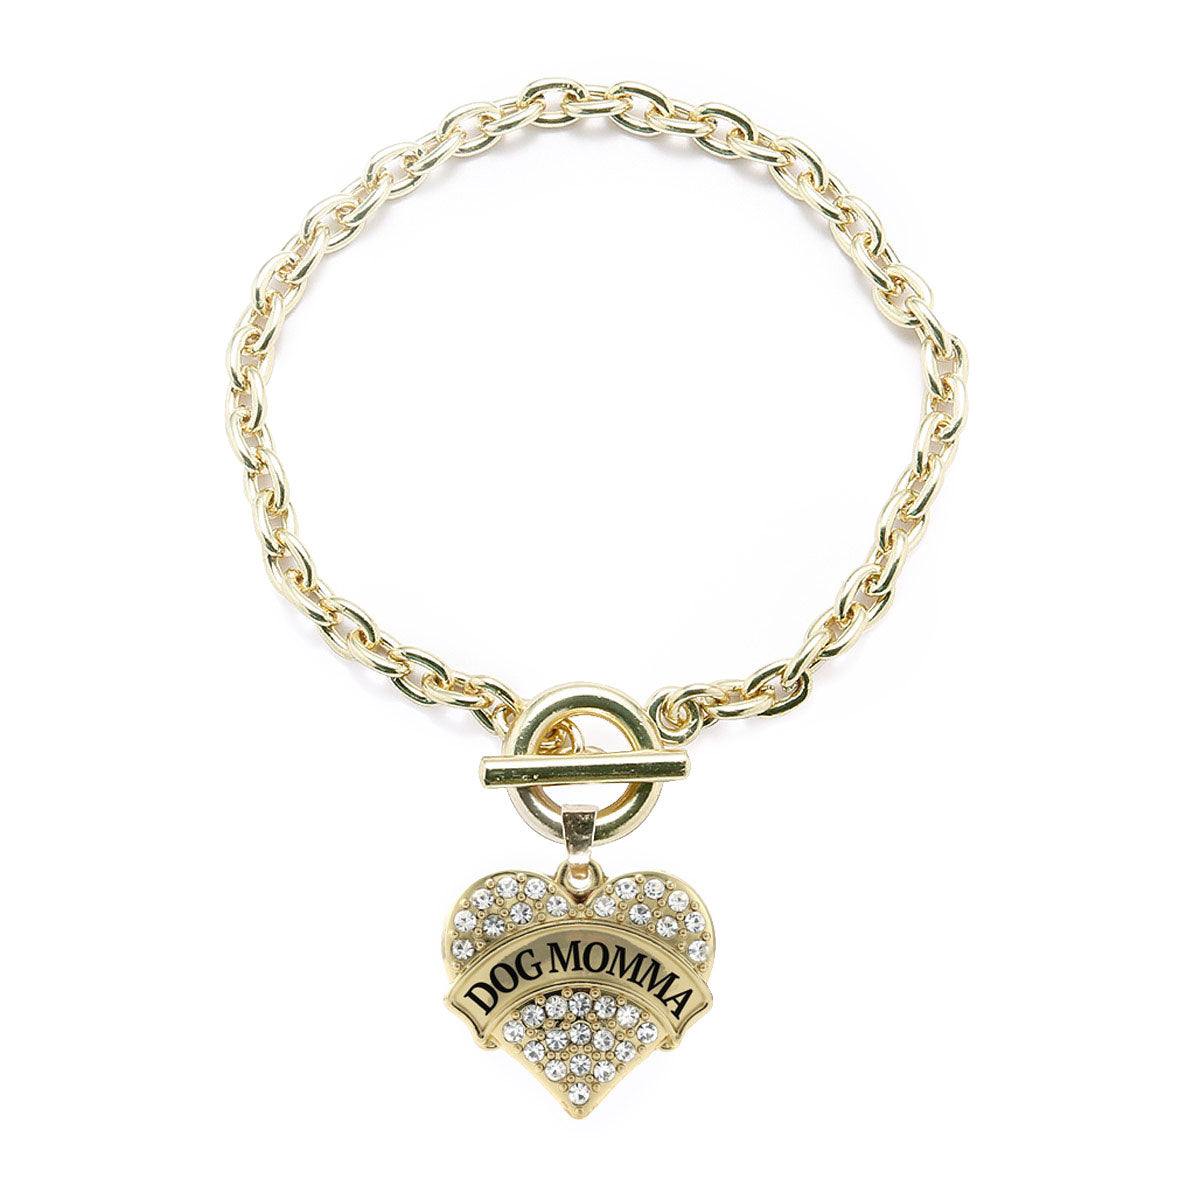 Gold Dog Momma Pave Heart Charm Toggle Bracelet